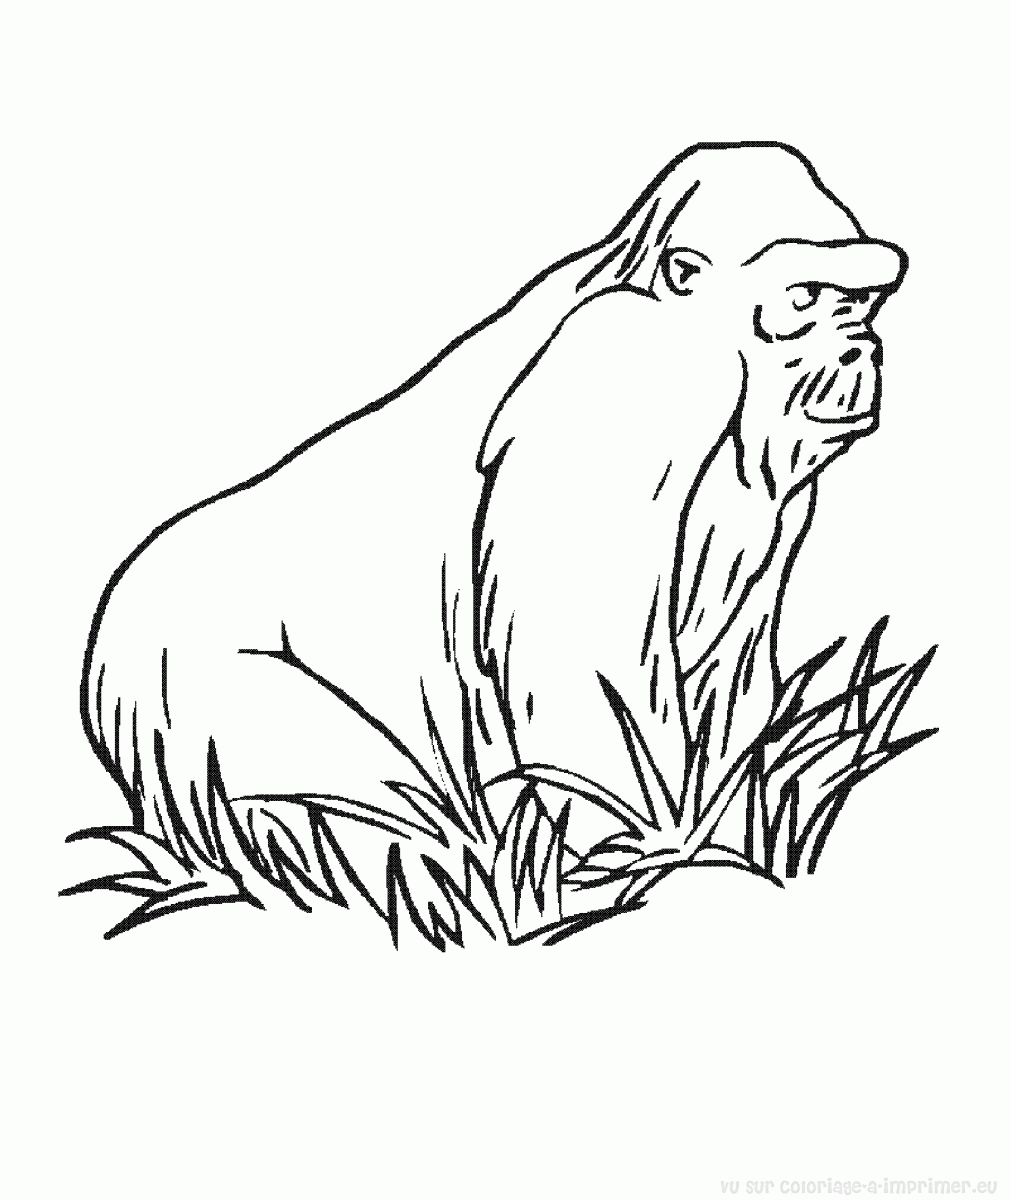 Dessin #13099 - Un beau dessin de gorille a imprimer et colorier